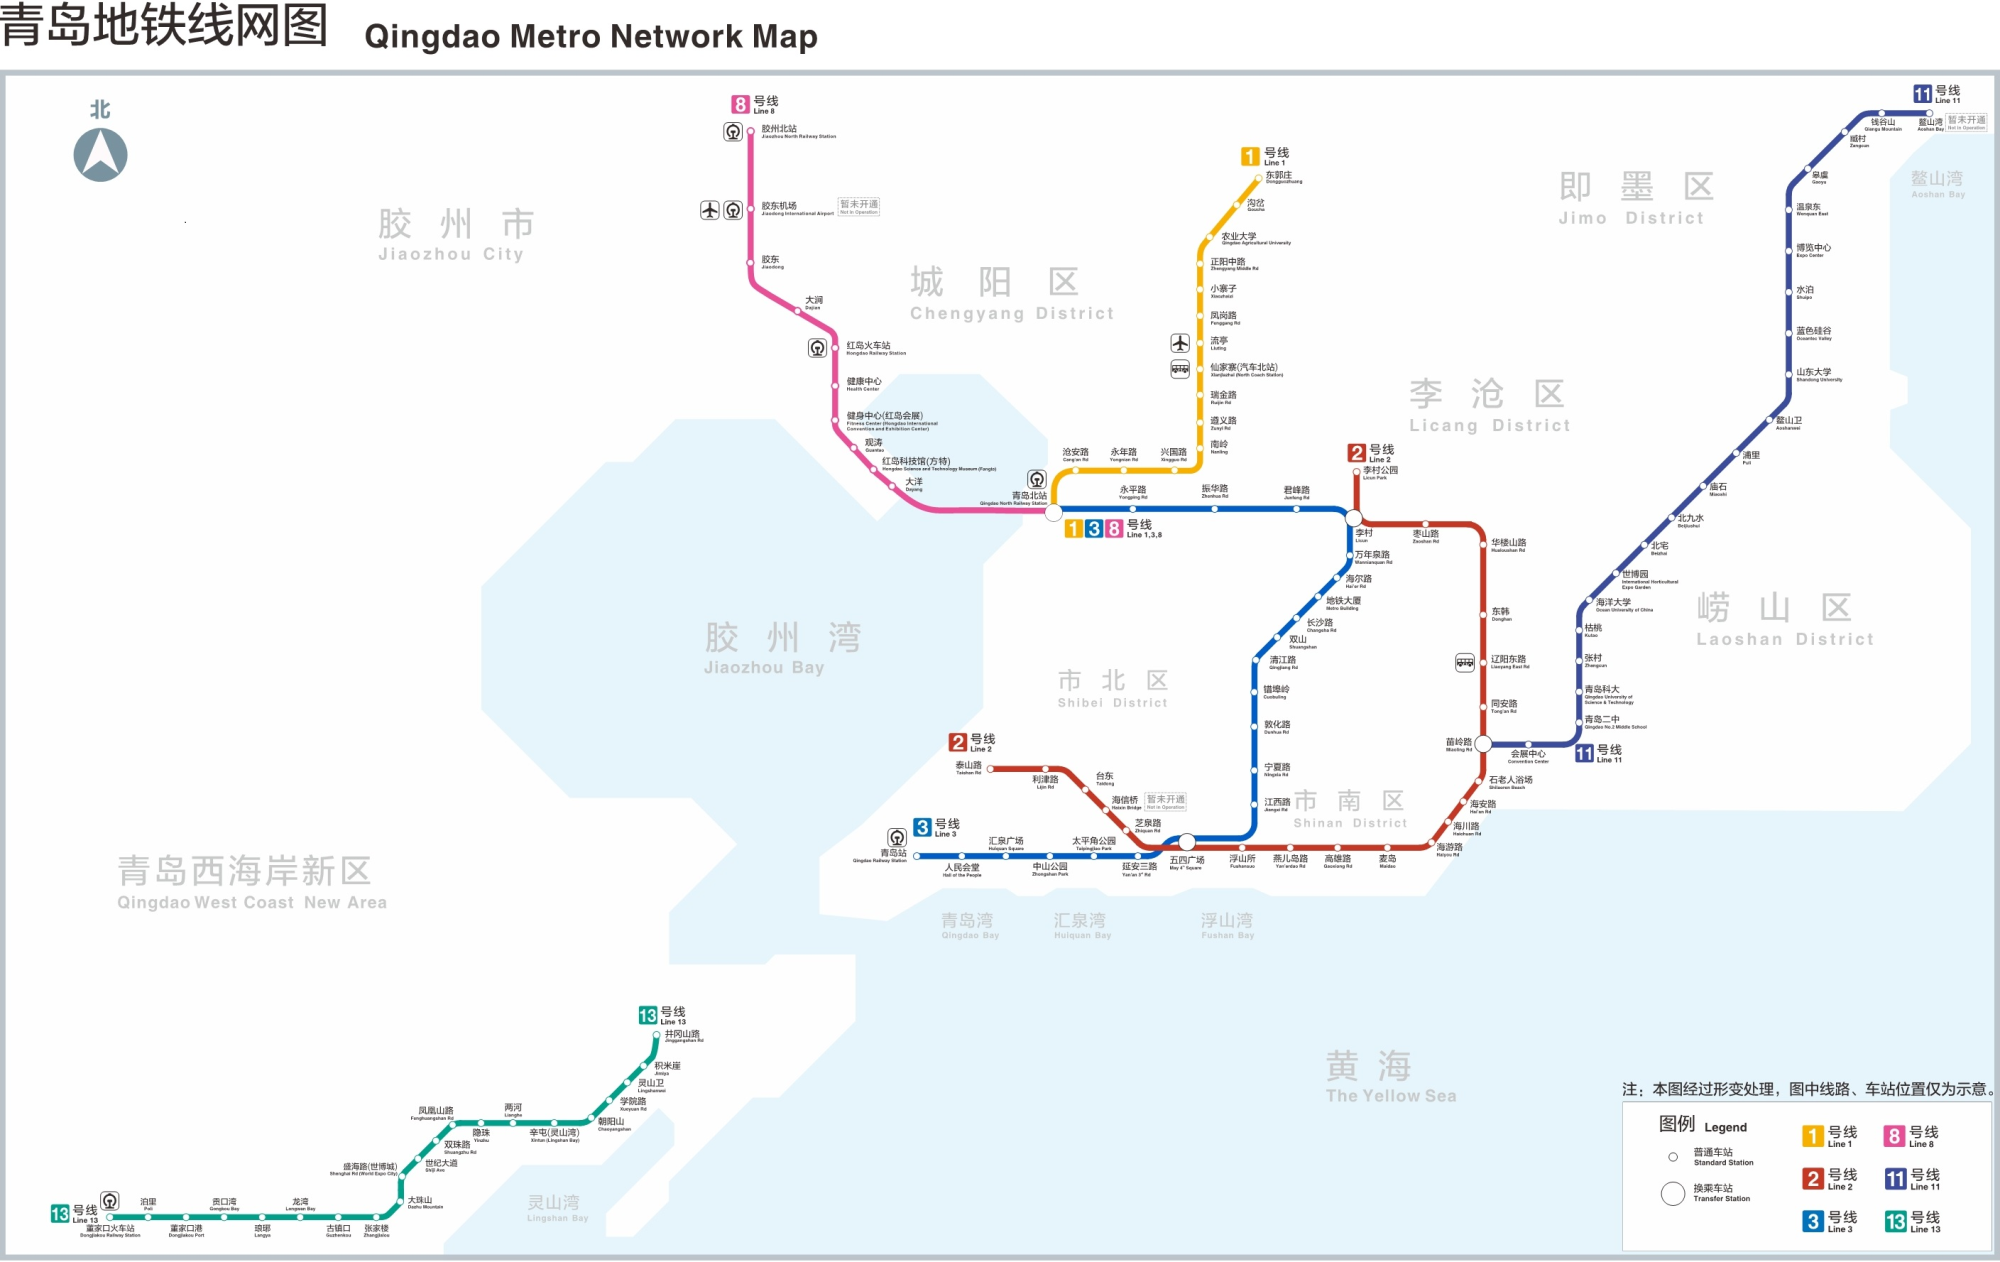 青岛地铁1号线全线贯通,超10座换乘站联通岛城五区